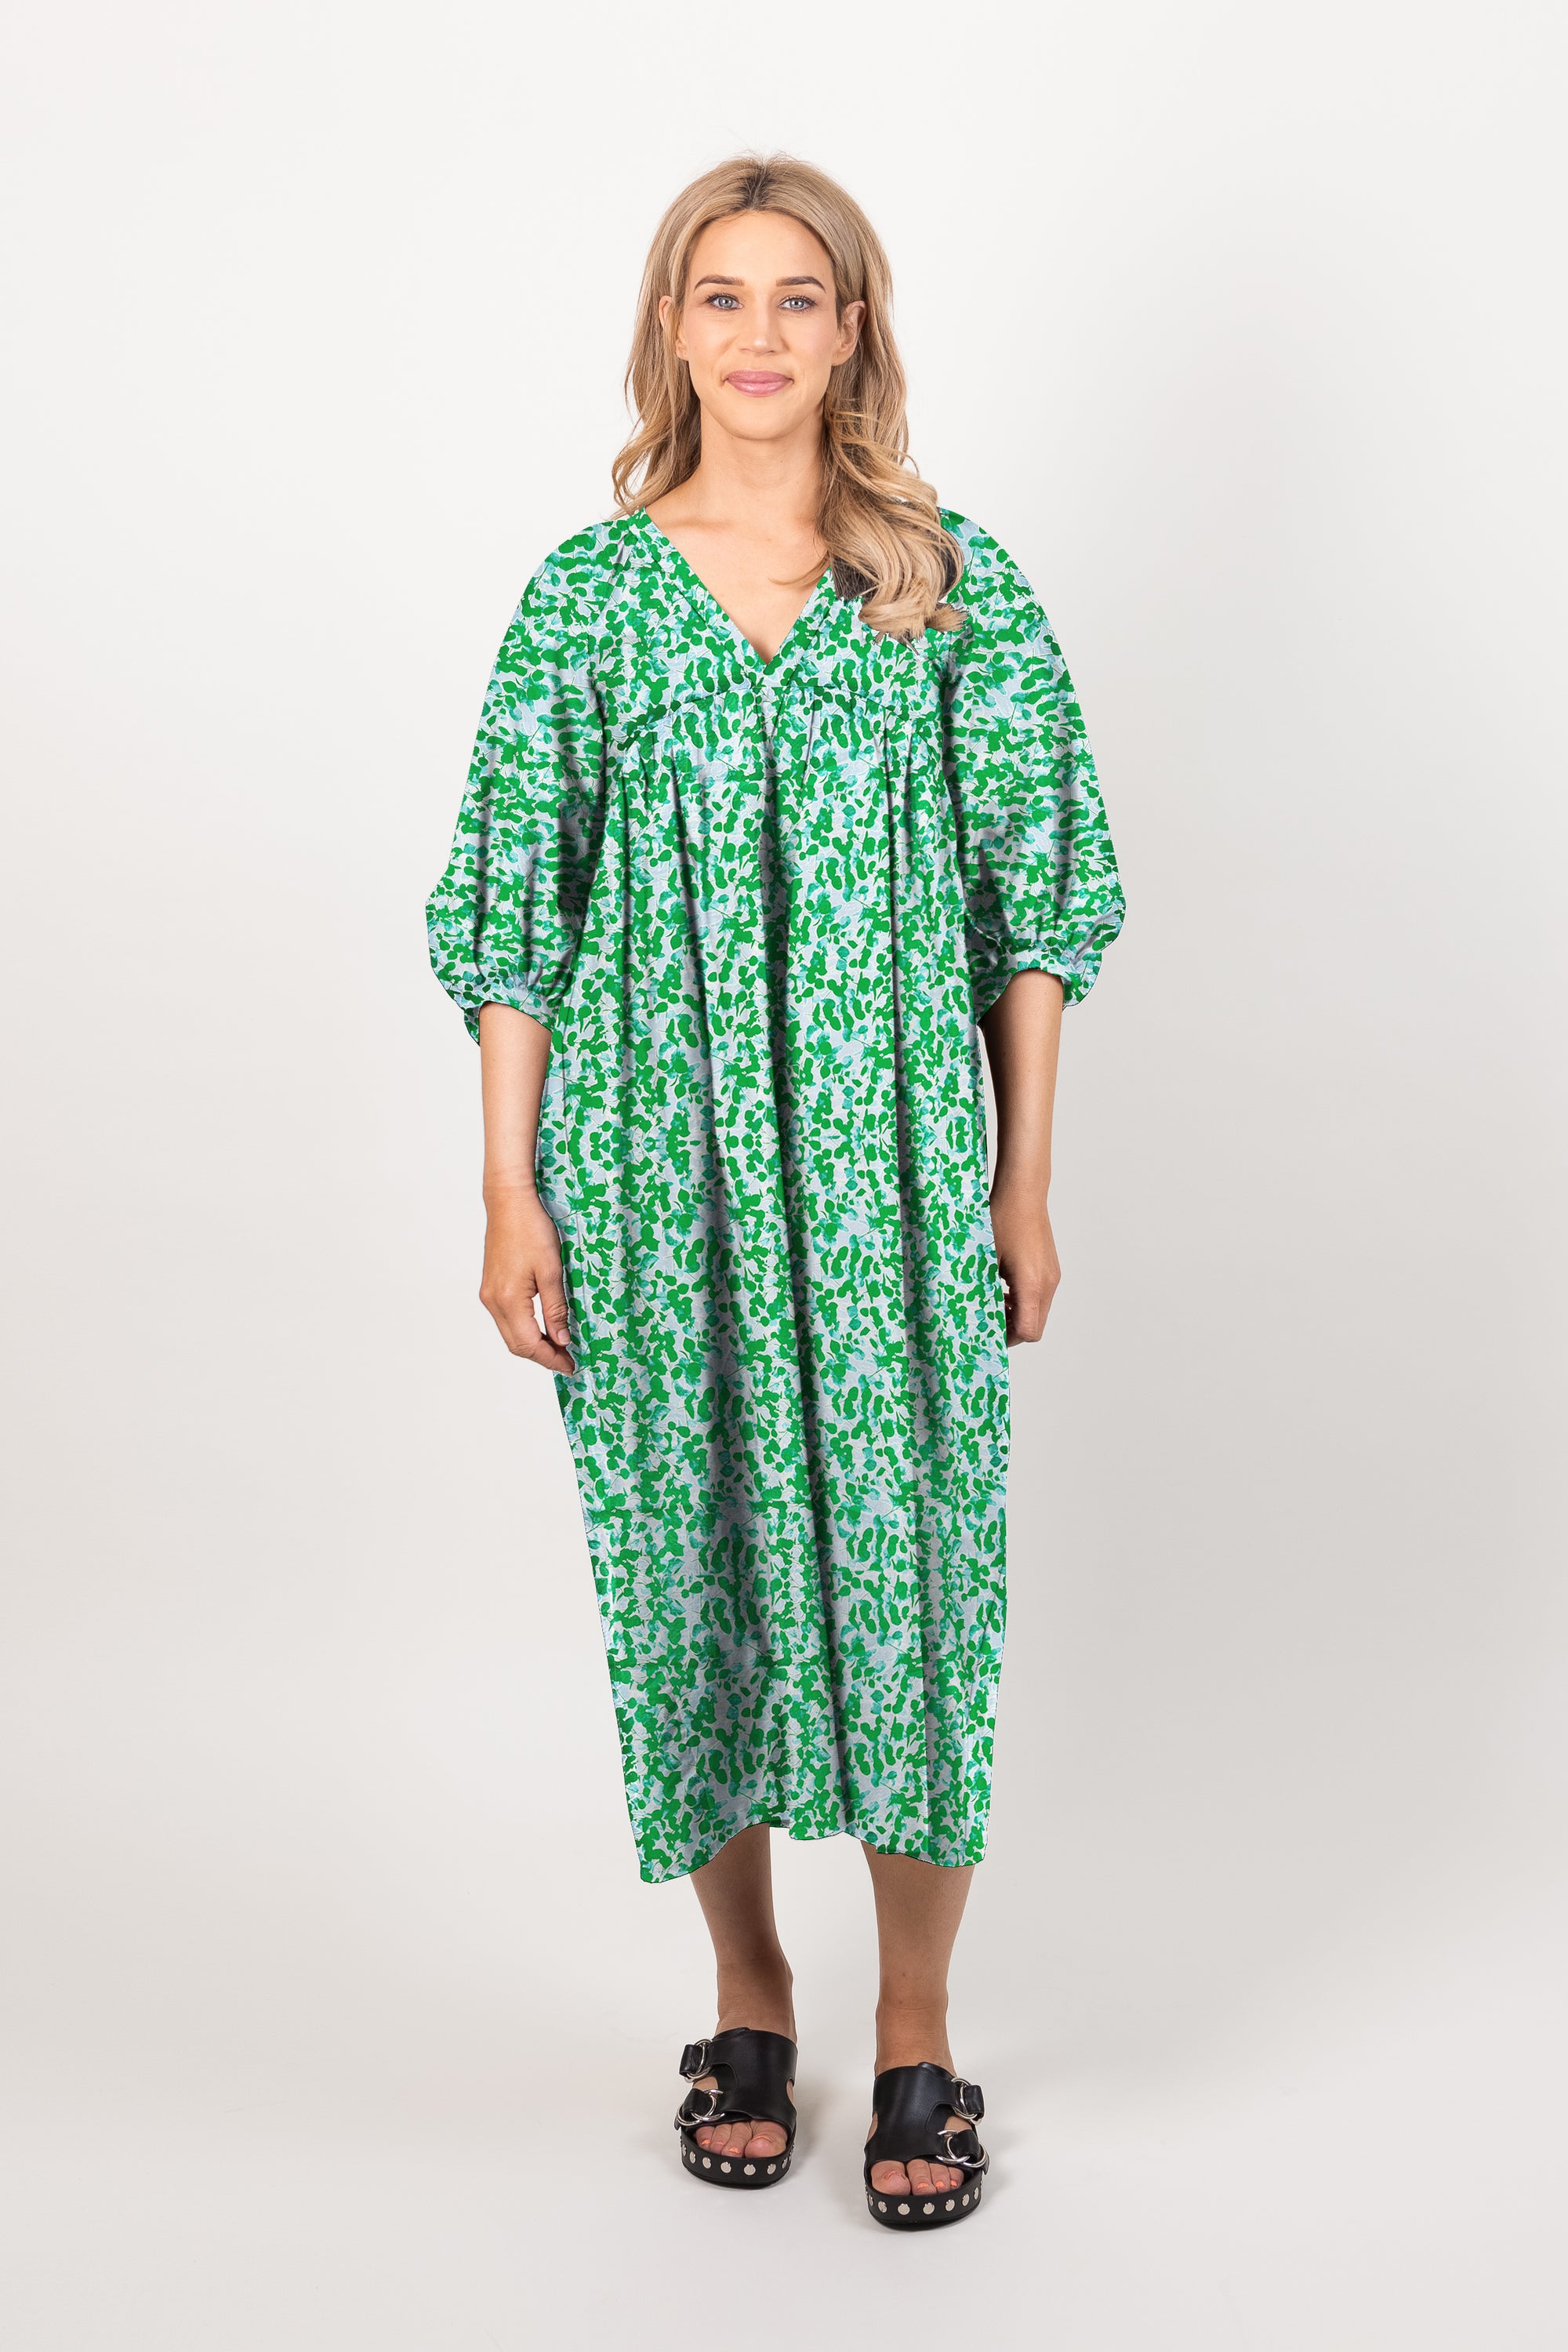 Ames Store Anna Dress Summer Cotton Green Blue Pattern